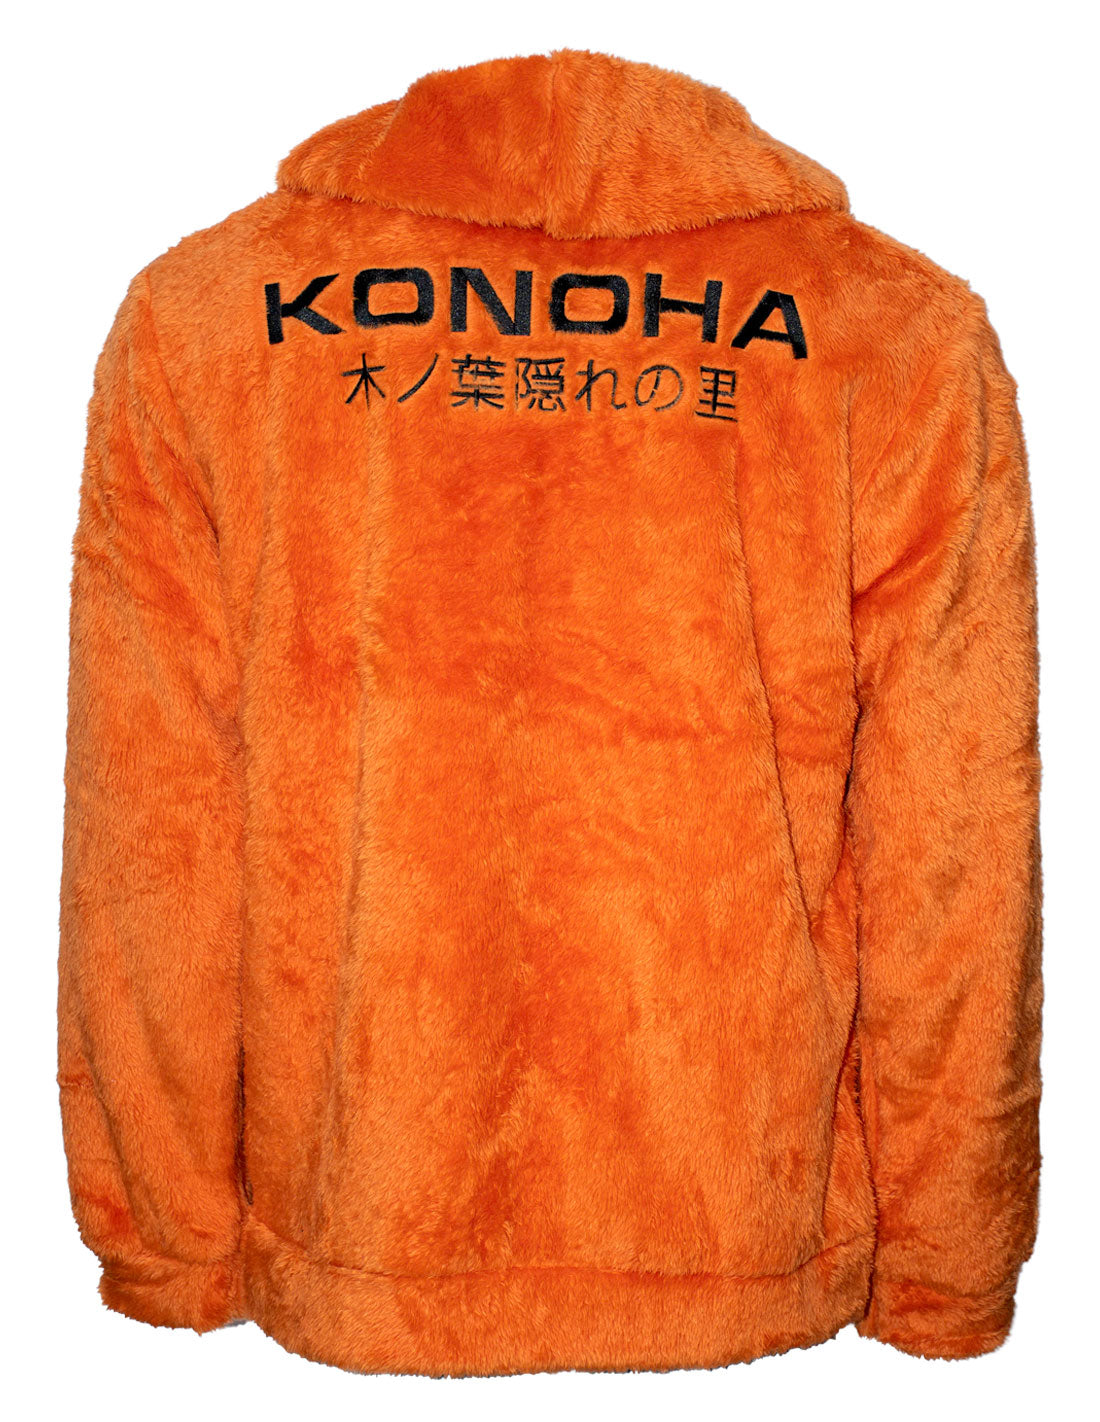 Sweatshirt Plush Naruto - Konoha 